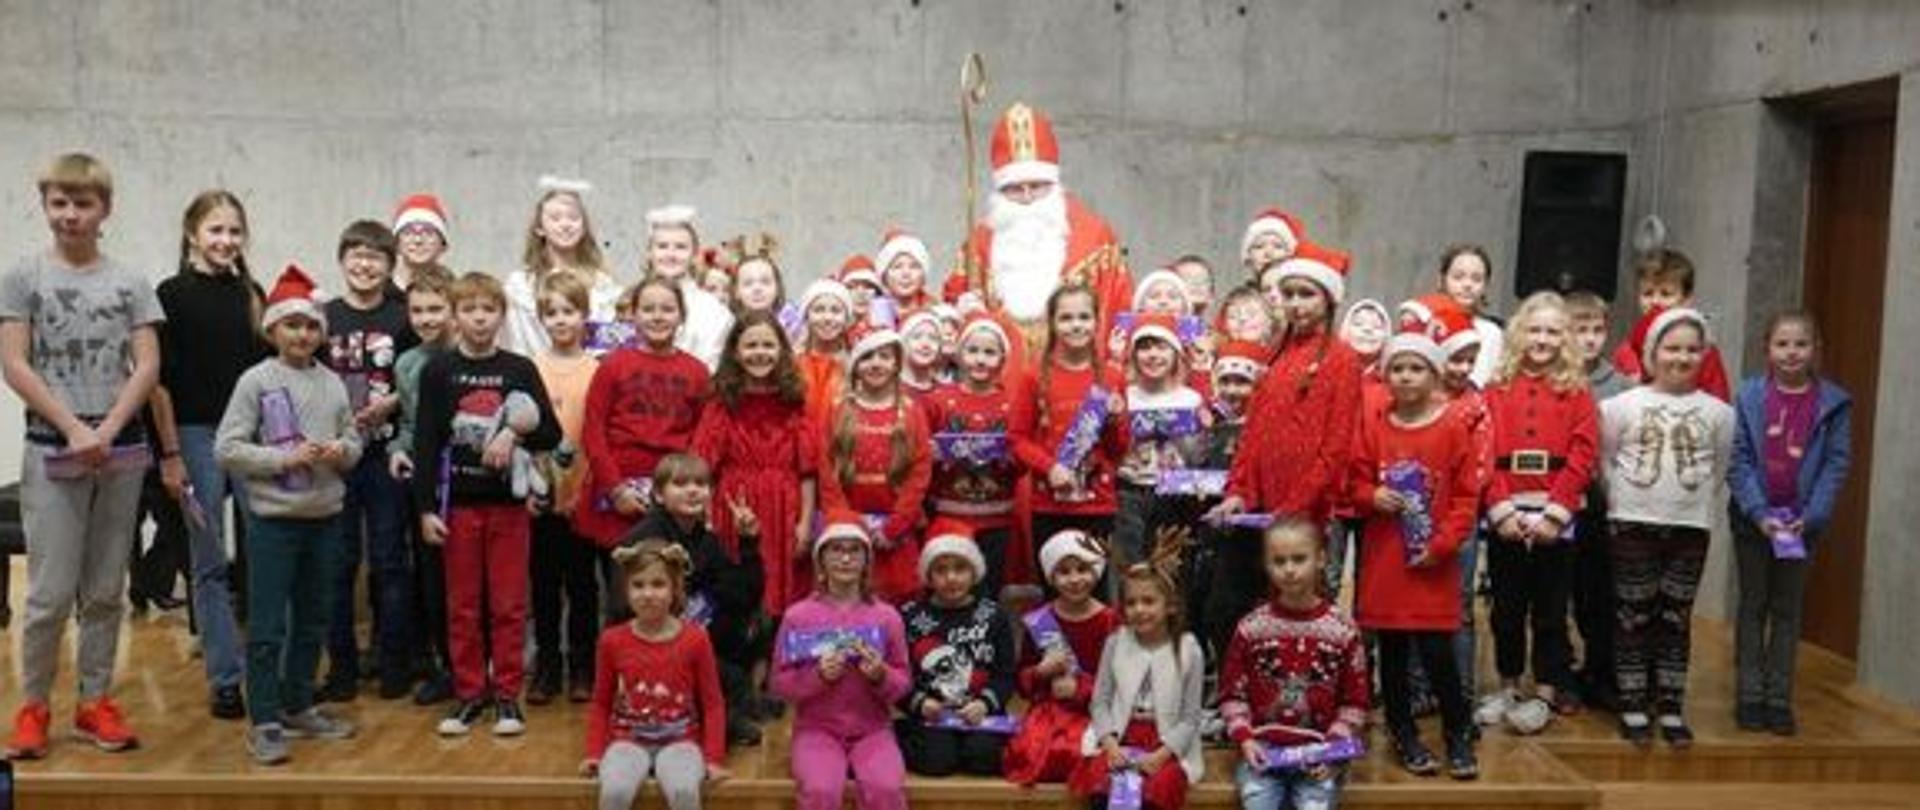 Zdjęcie przedstawia grupę dzieci w czerwonych czapkach siedzących na scenie wokół Świętego Mikołaja